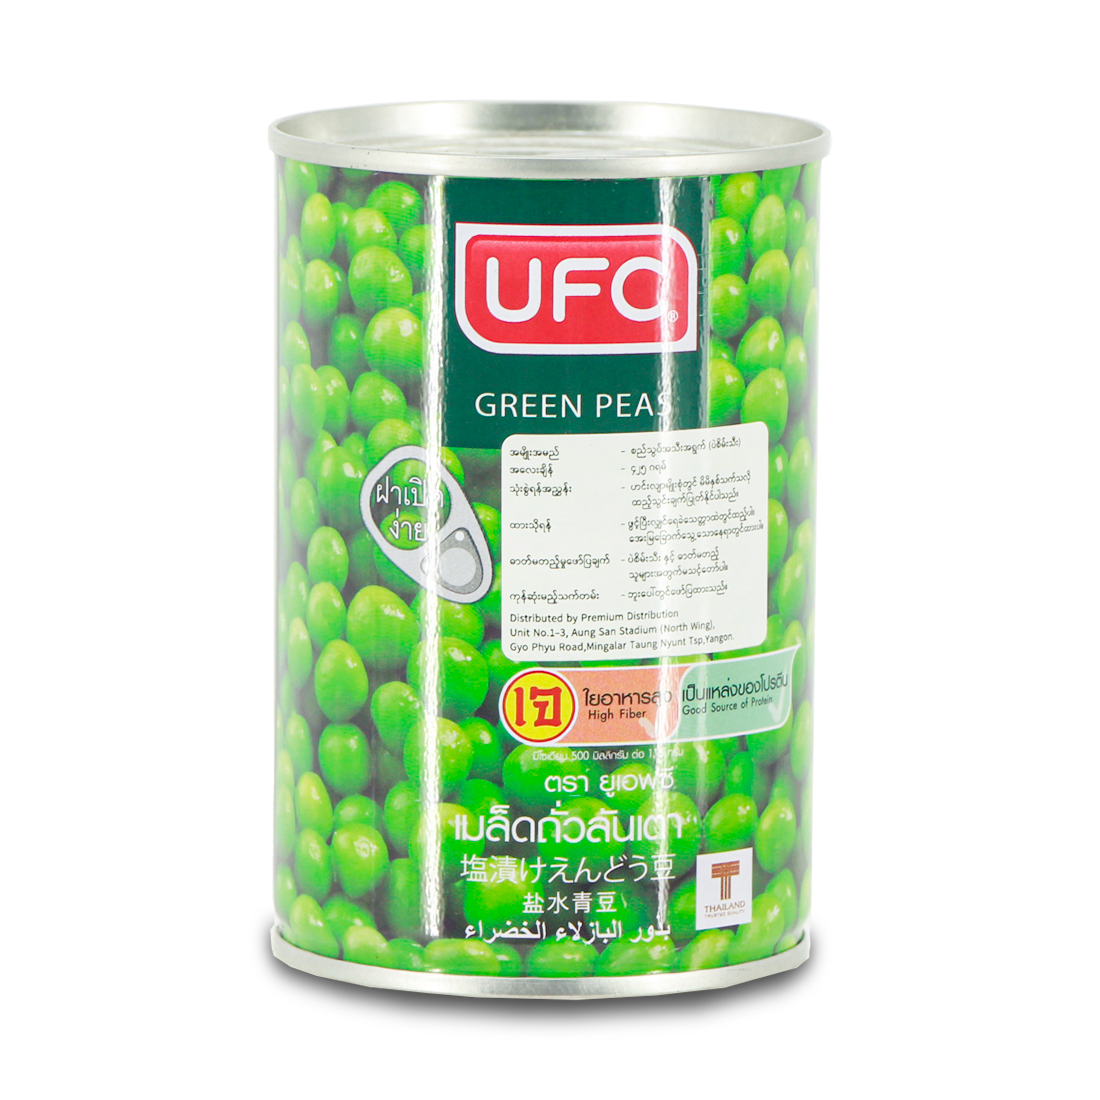 UFC Green Peas - 230g